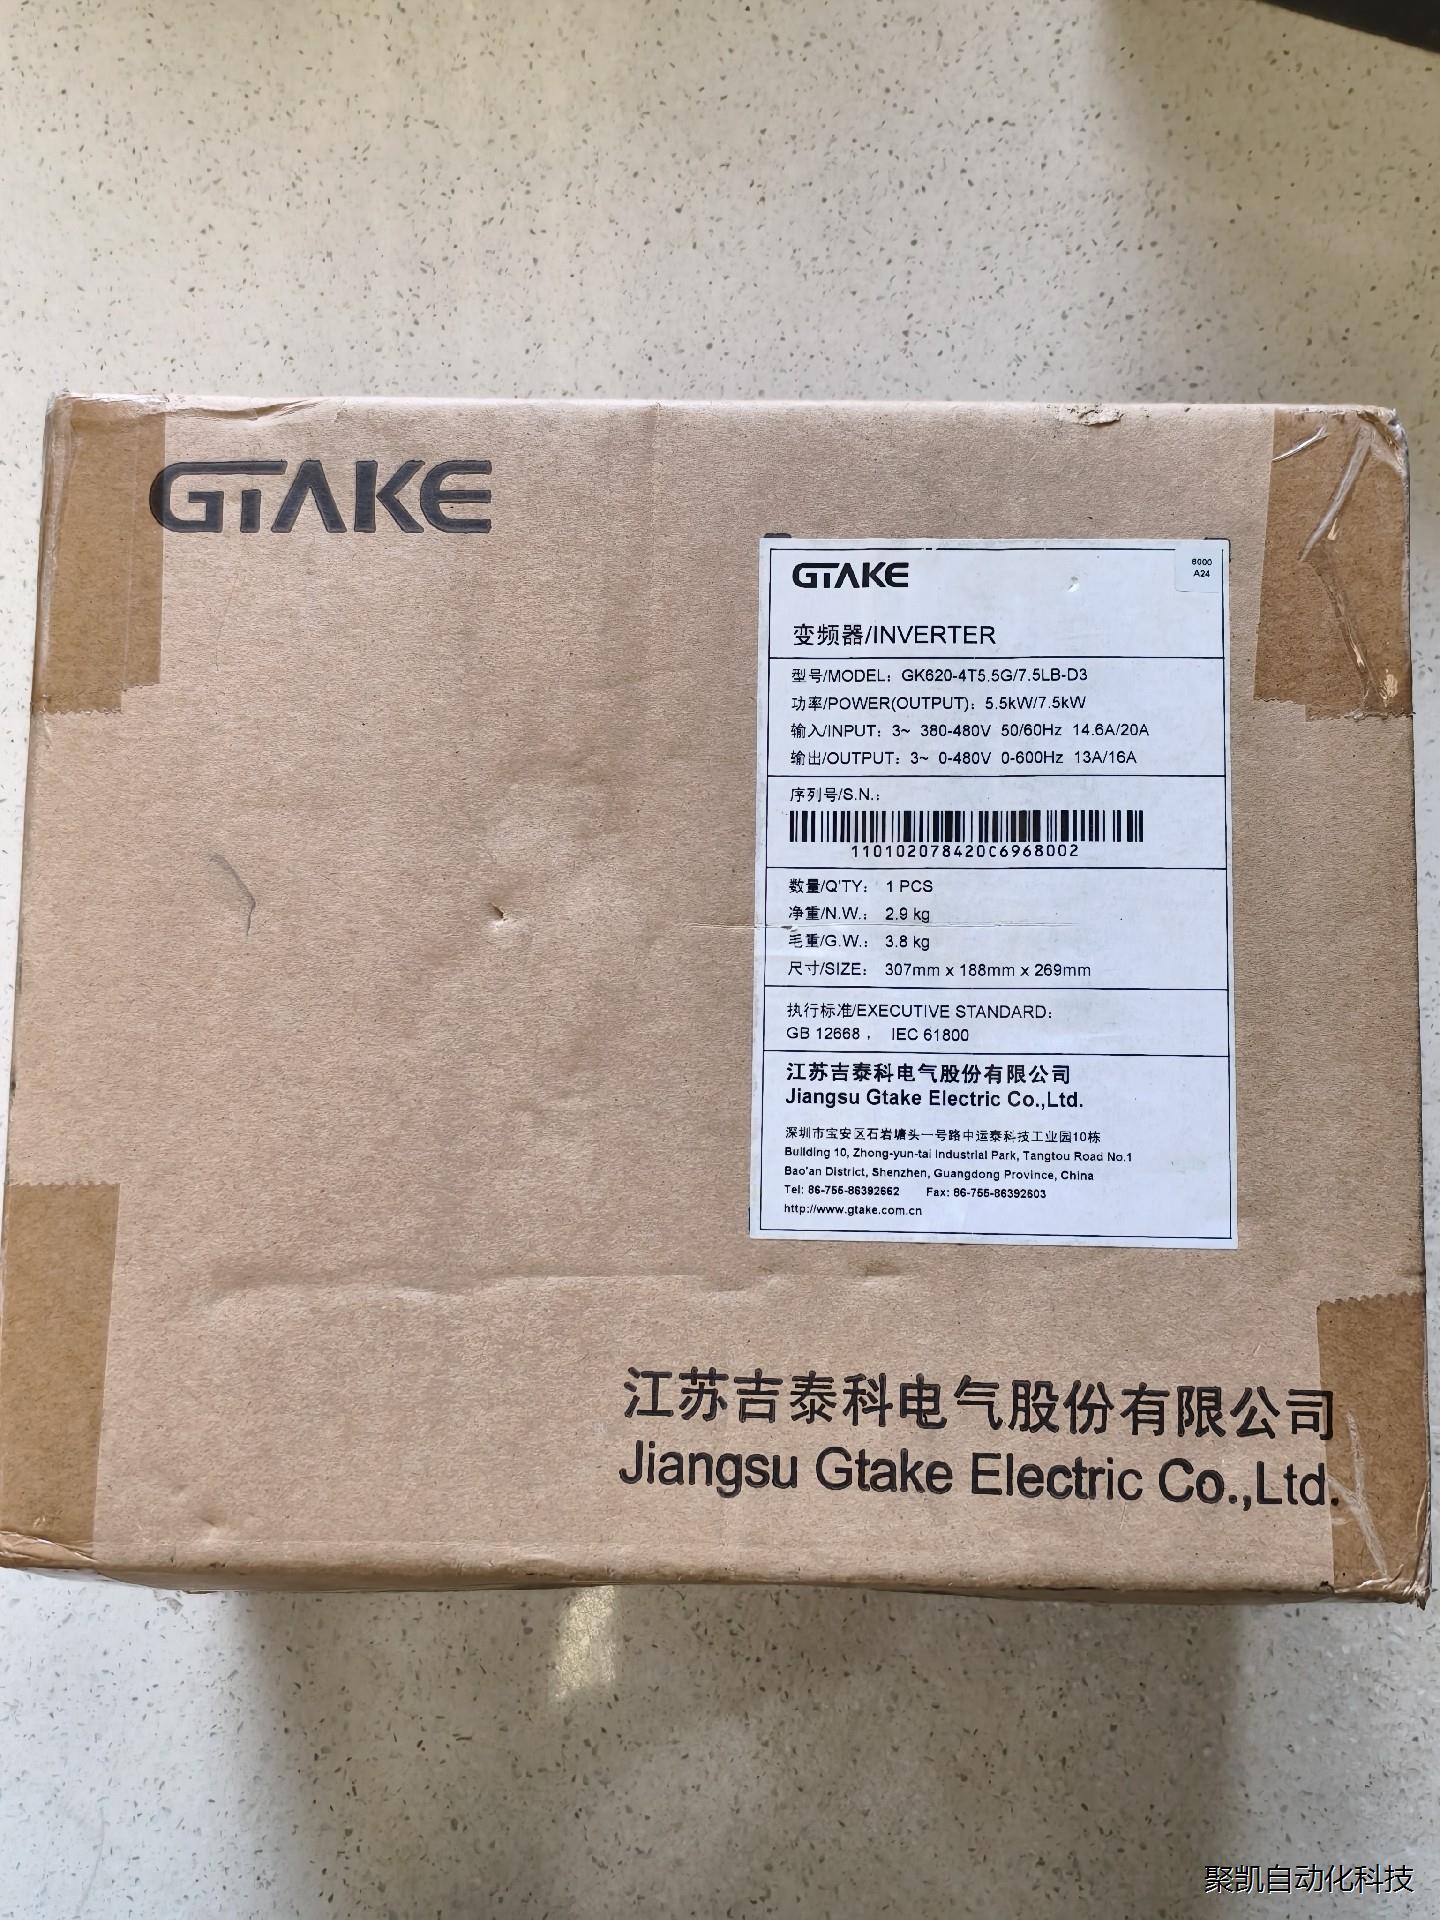 全新吉泰科变频器 GK620-4T5.5G/7.5LB-D3元器件